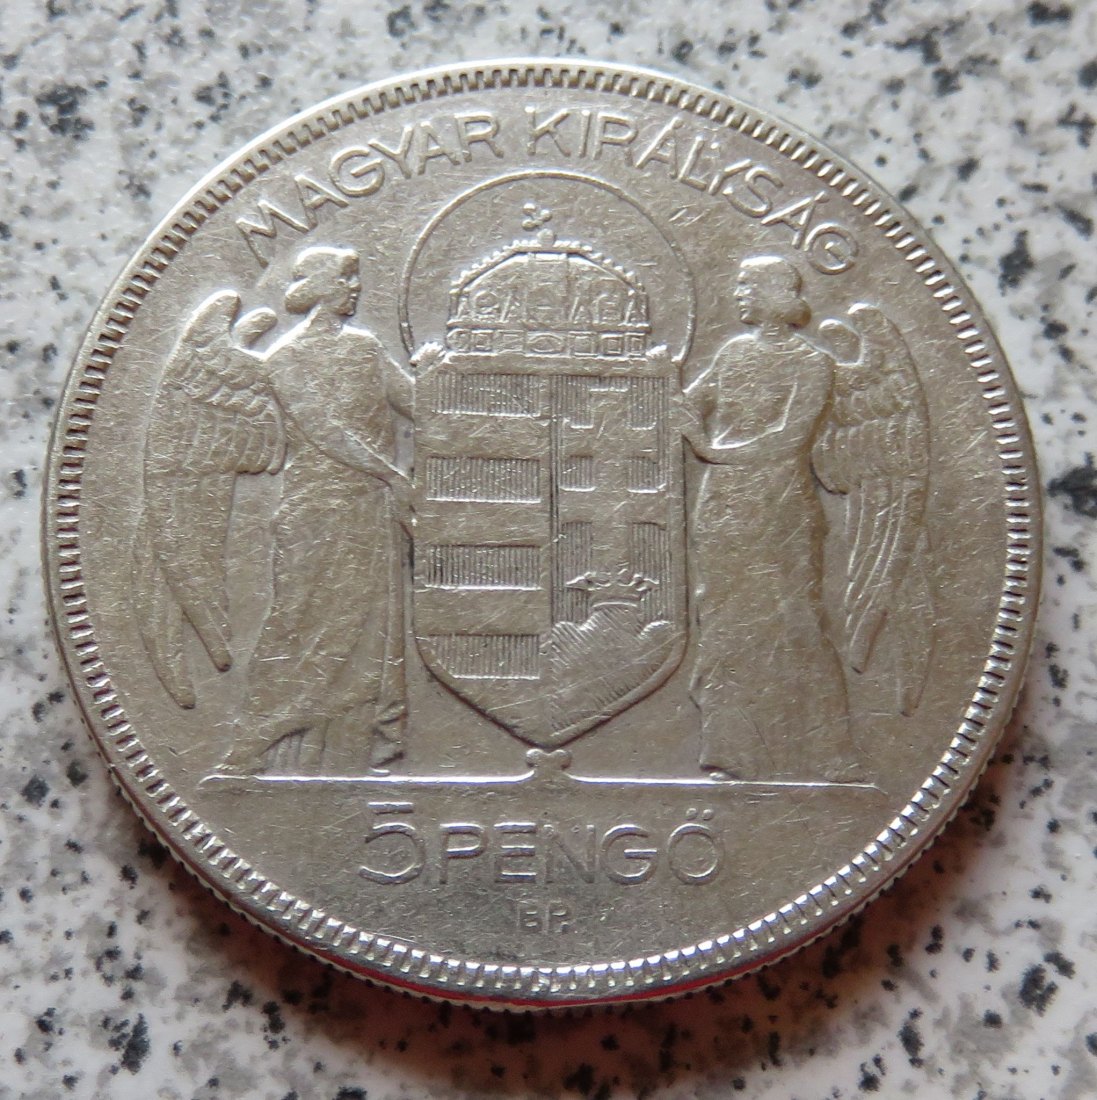  Ungarn 5 Pengö 1930   